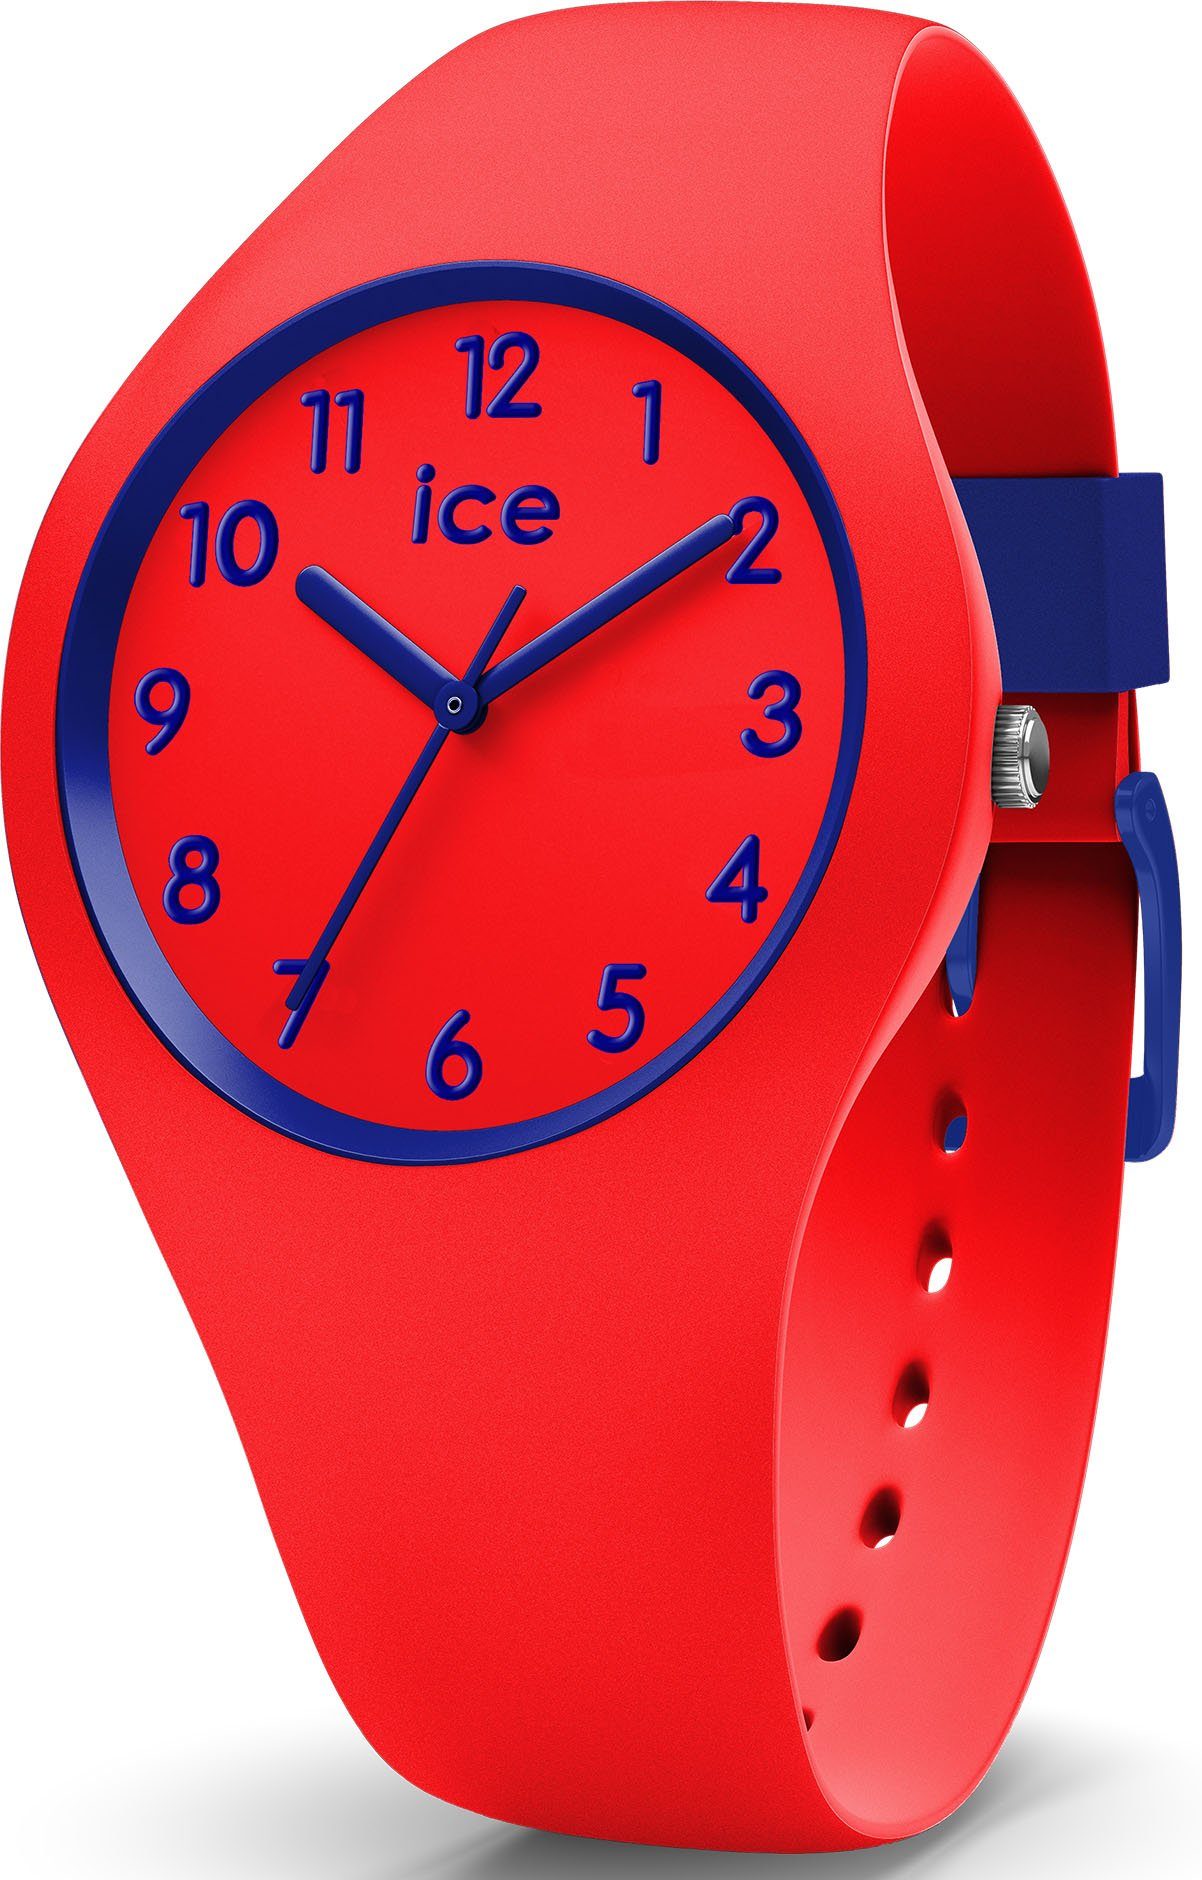 Verkaufskanal kids, ideal Quarzuhr auch als Geschenk 014429, ICE ola ice-watch